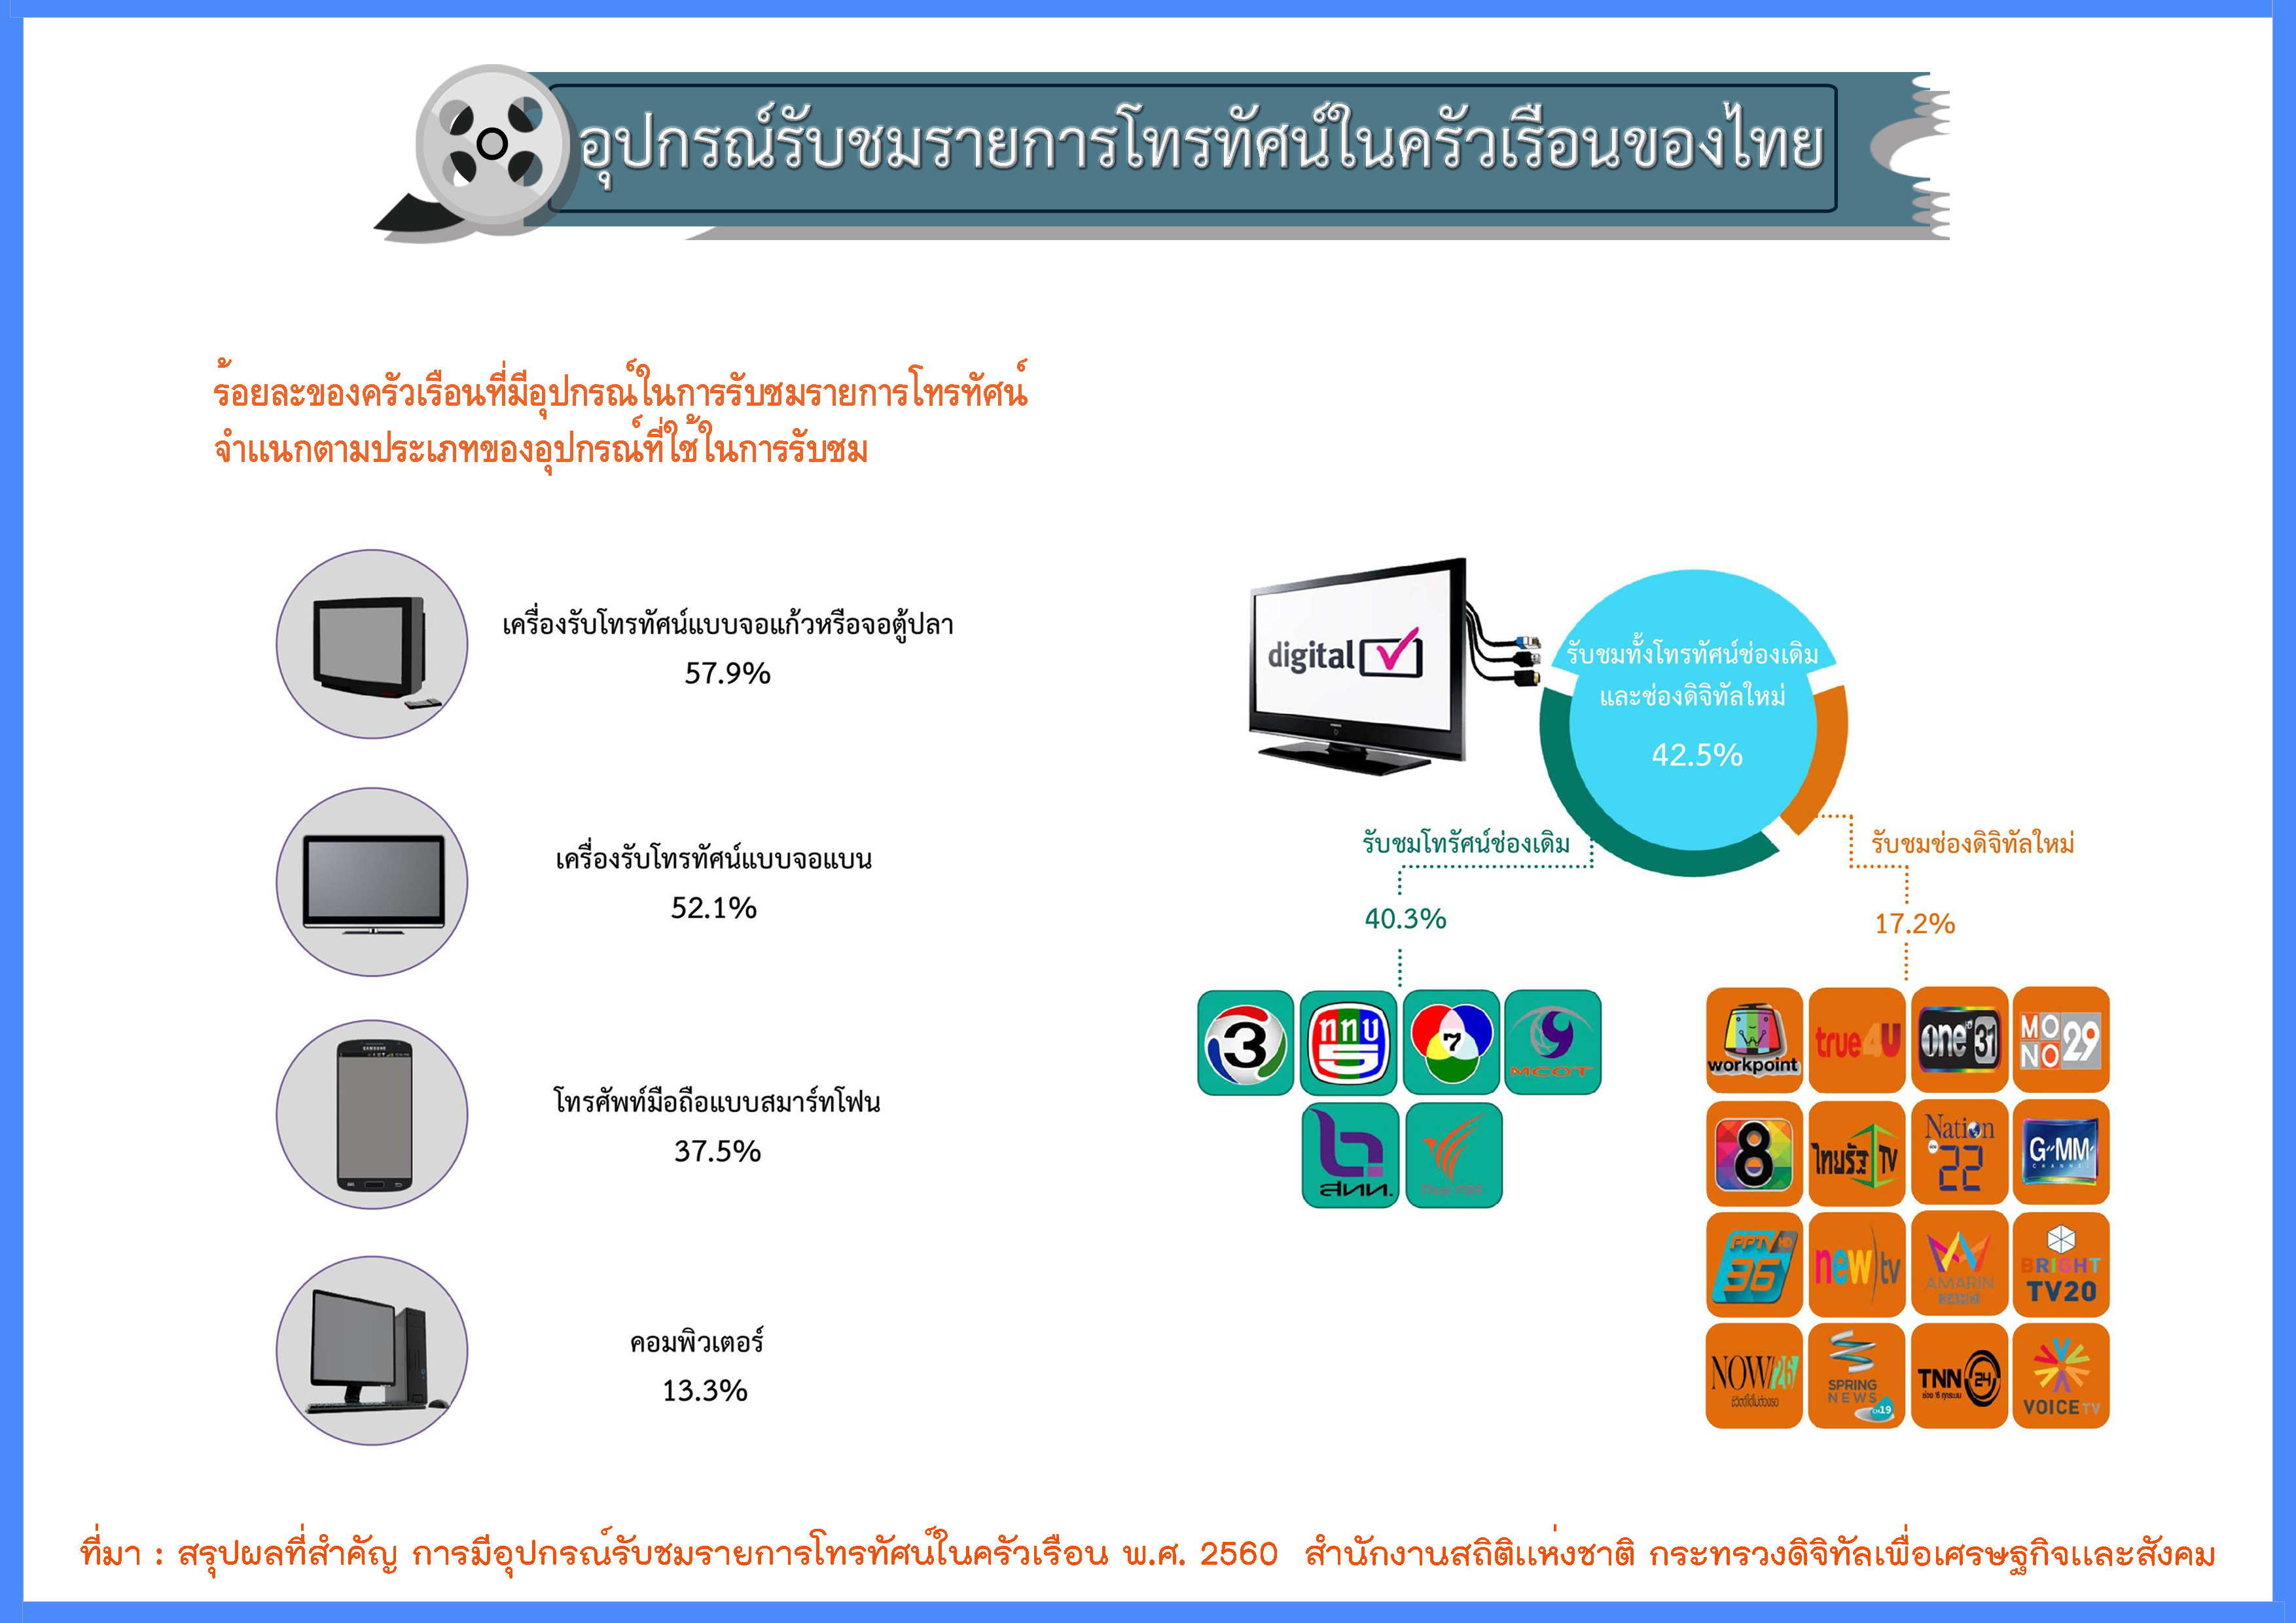    อุปกรณ์รับชมรายการโทรทัศน์ในครัวเรือนของไทย